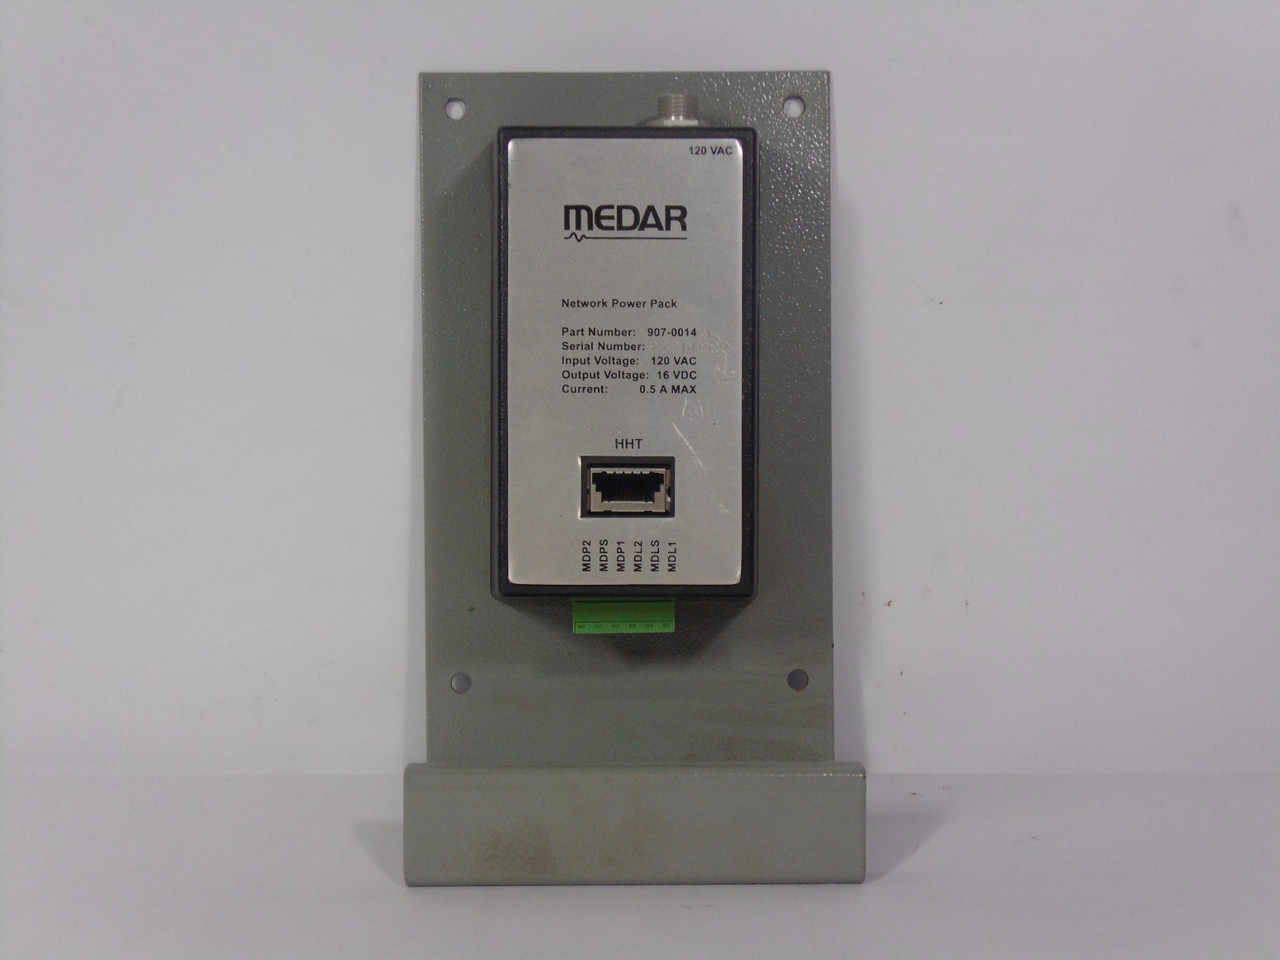 Medar 907-0014 Network Power Pack 120 VAC USED